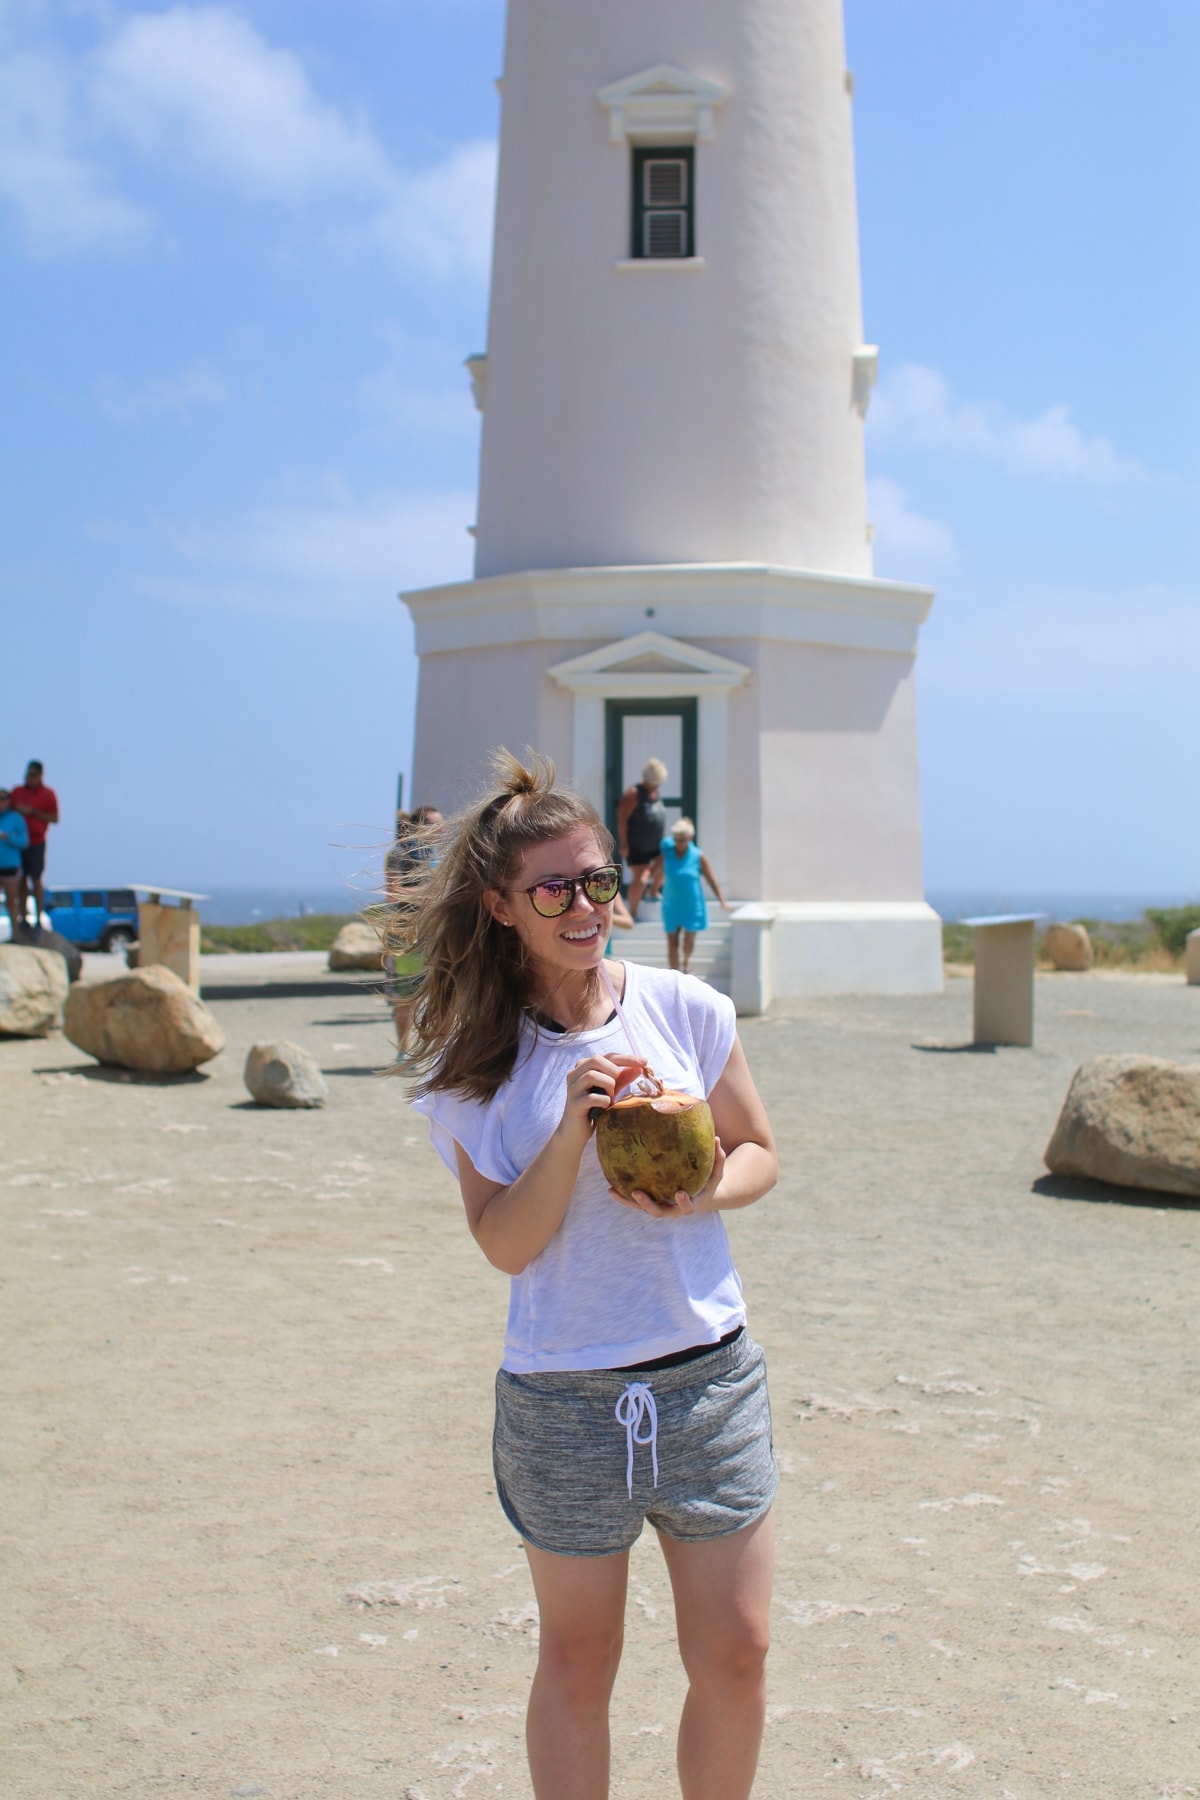 Lauren standing in front of a tower